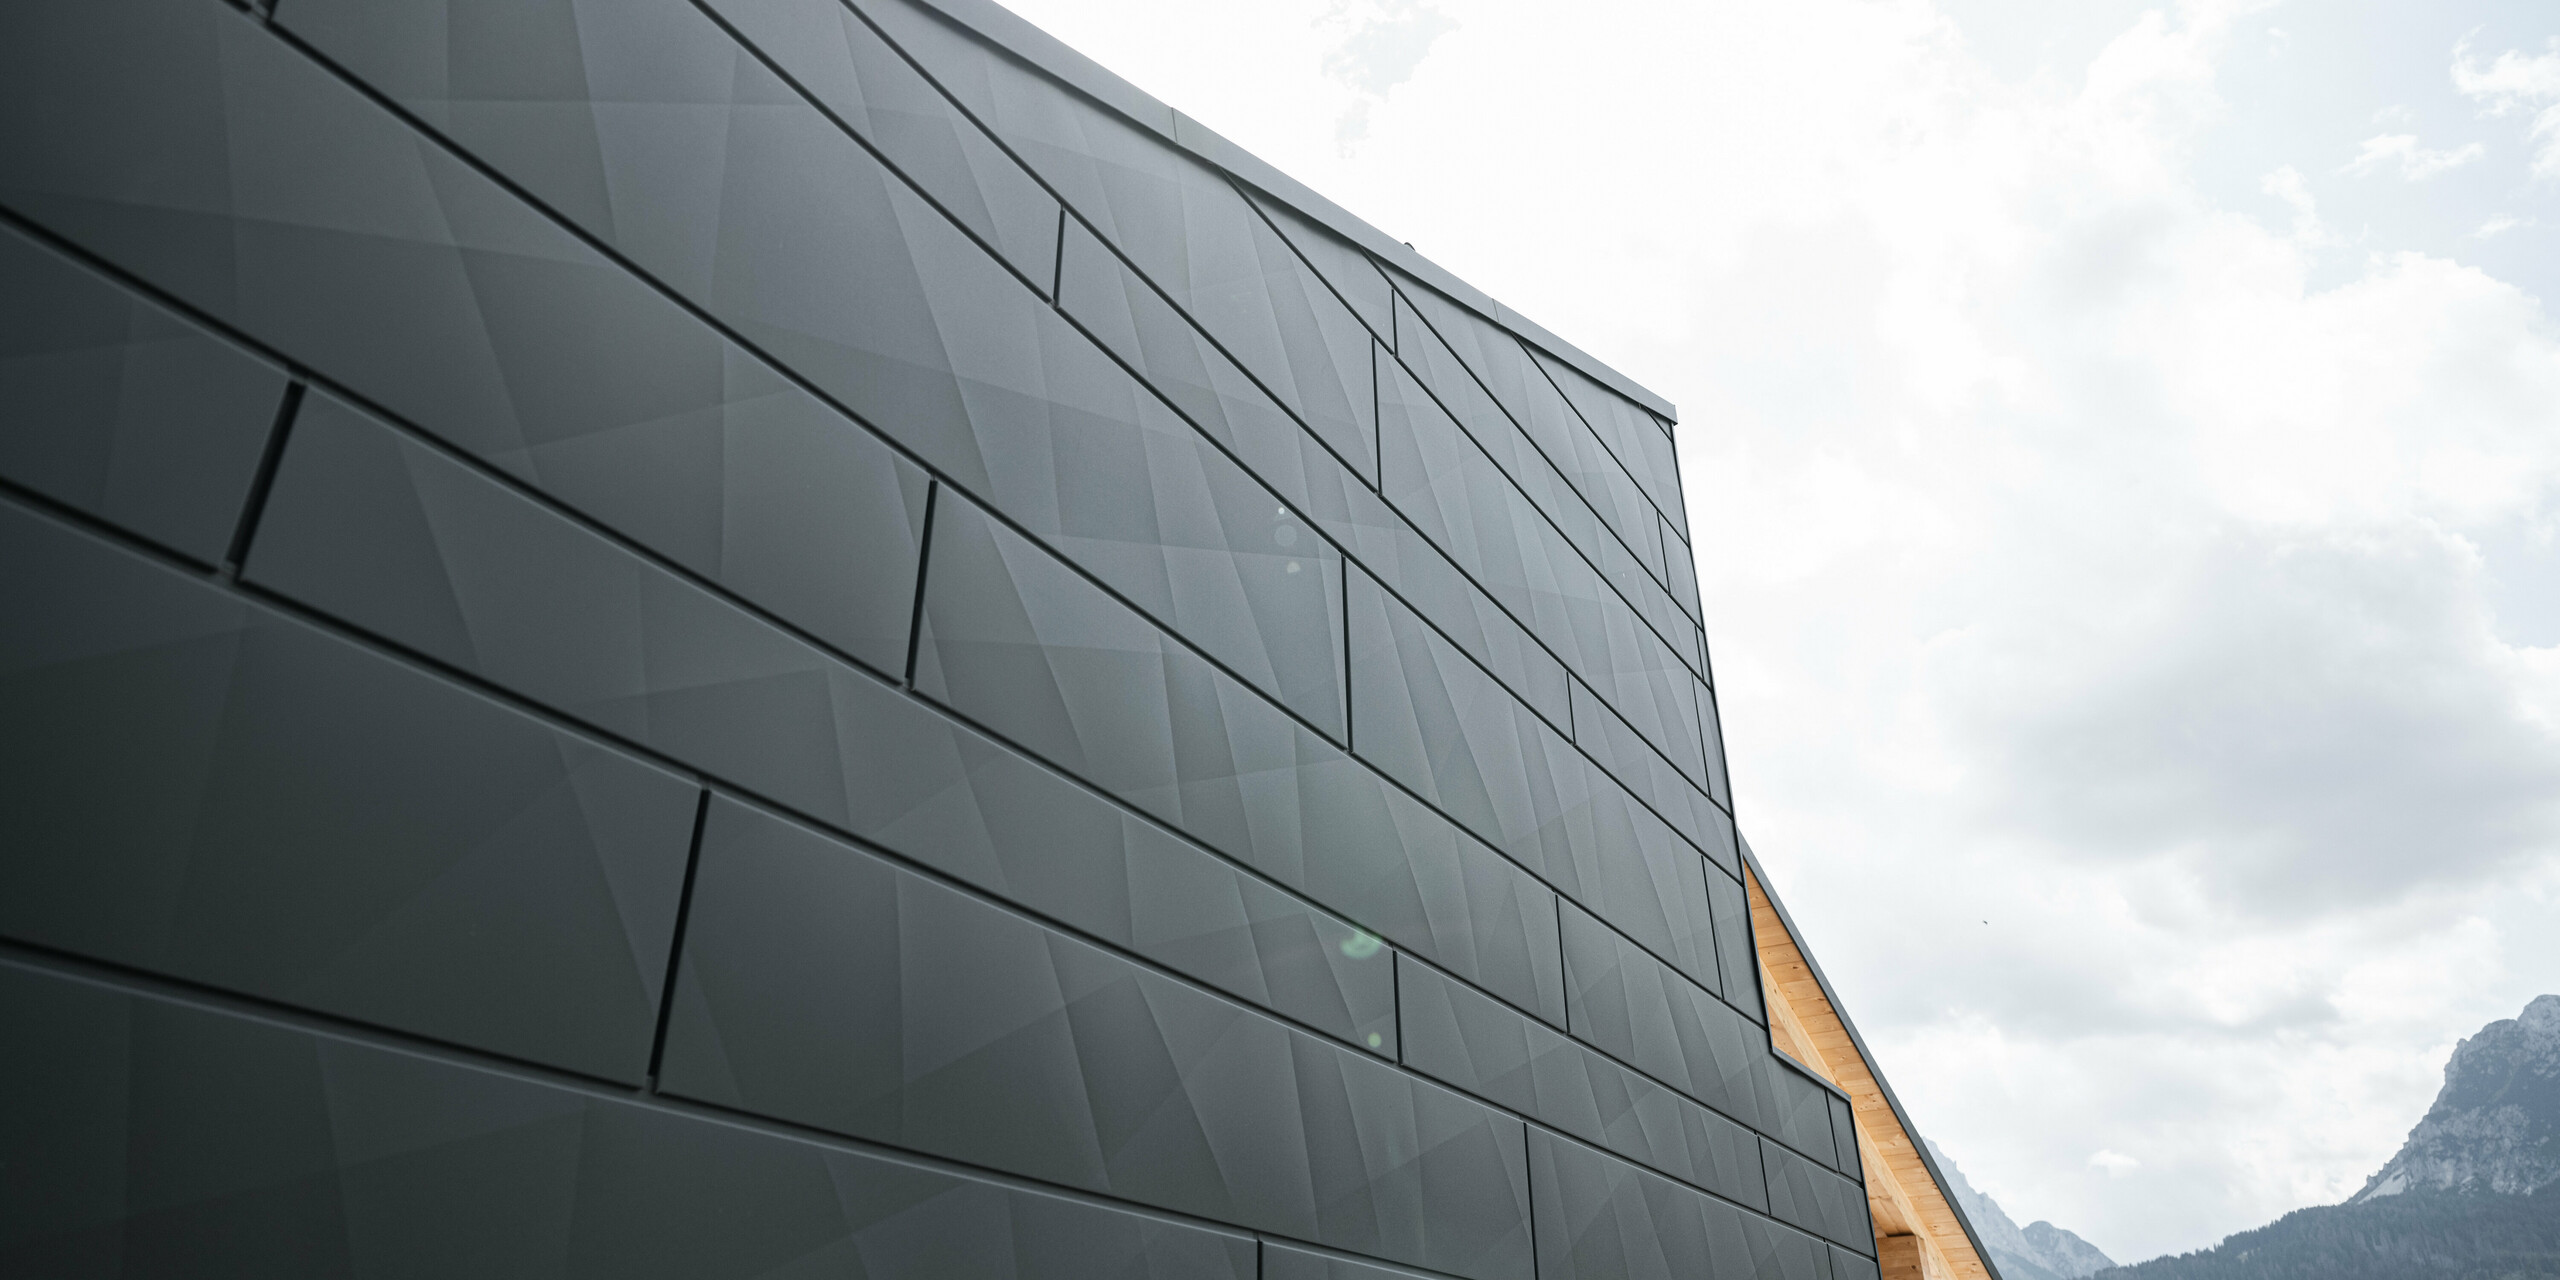 Detailaufnahme der PREFA Siding.X Fassadenpaneele in P.10 Schwarz am Casa Hoffe in Sappada, Italien. Die Paneele aus Aluminium präsentieren ein modernes, geometrisches Muster, das der Struktur eine zeitgenössische Textur verleiht, während es sich harmonisch in die alpine Umgebung einfügt. Dieses Bild zeigt die Innovation und Qualität von PREFA, die eine ästhetische und dauerhafte Verkleidung für moderne Architektur bereitstellt.